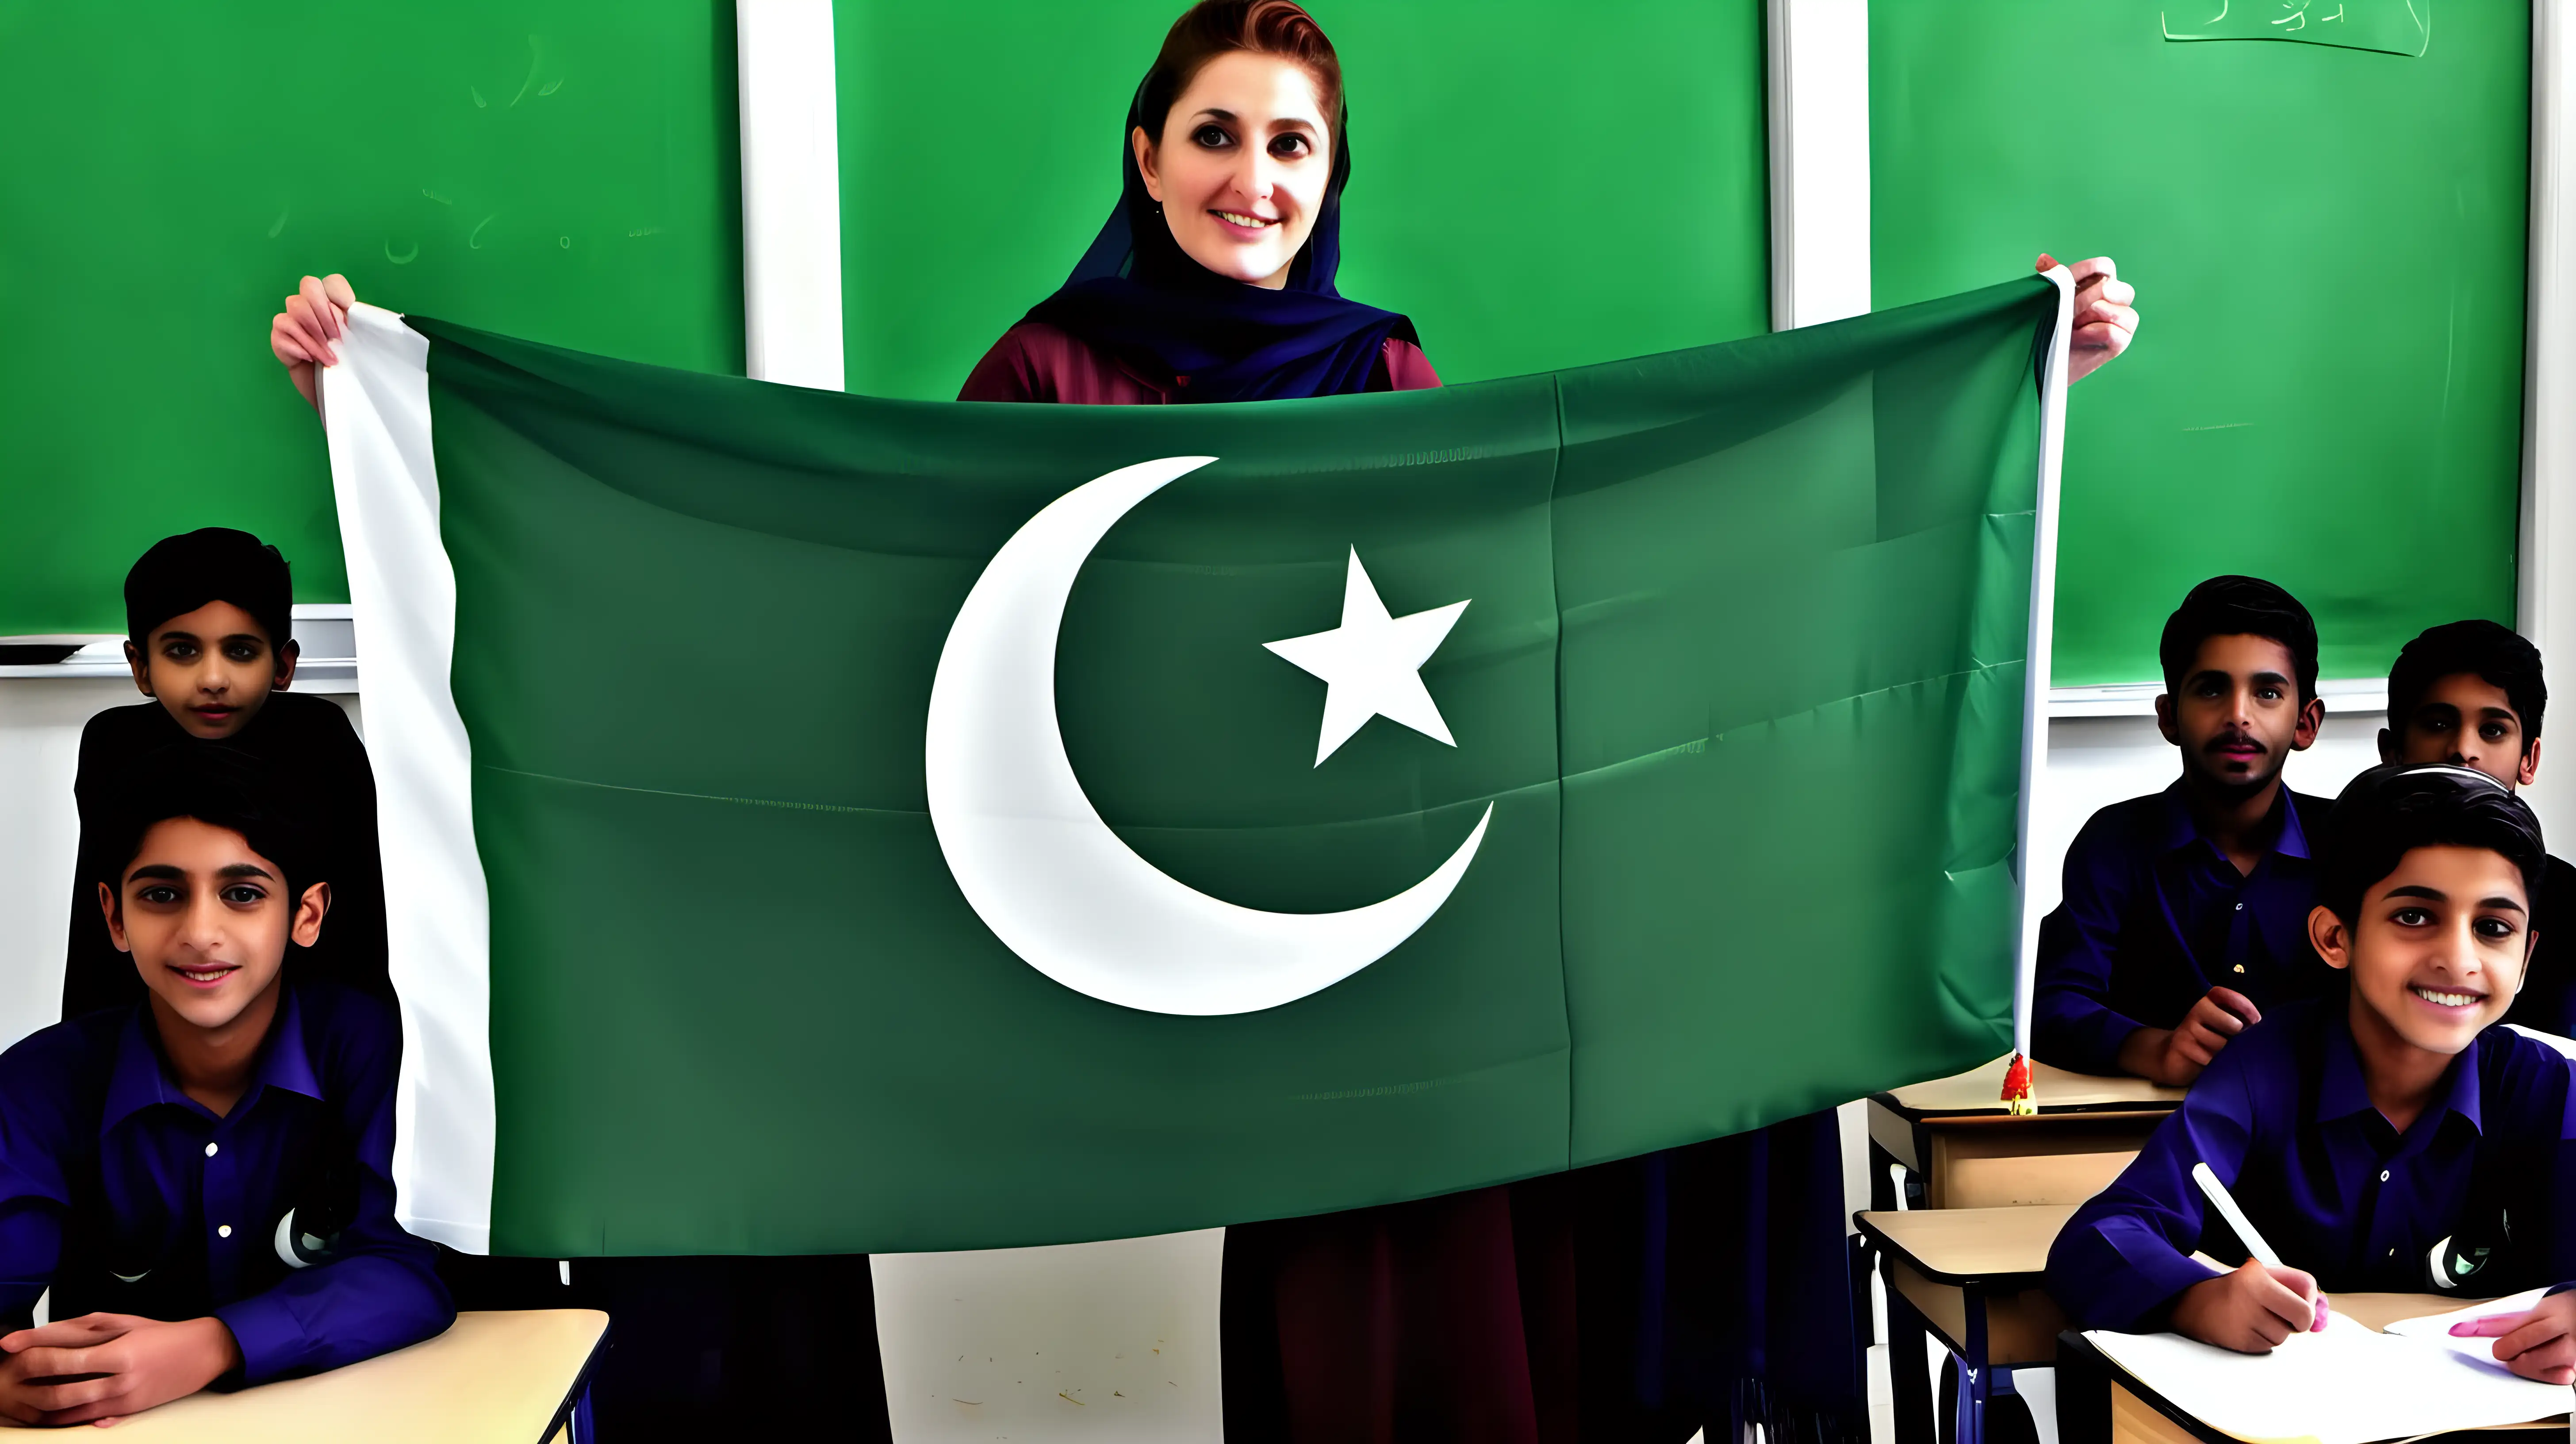 Inspiring Pakistani Flag Teacher Illuminates Classroom of Students